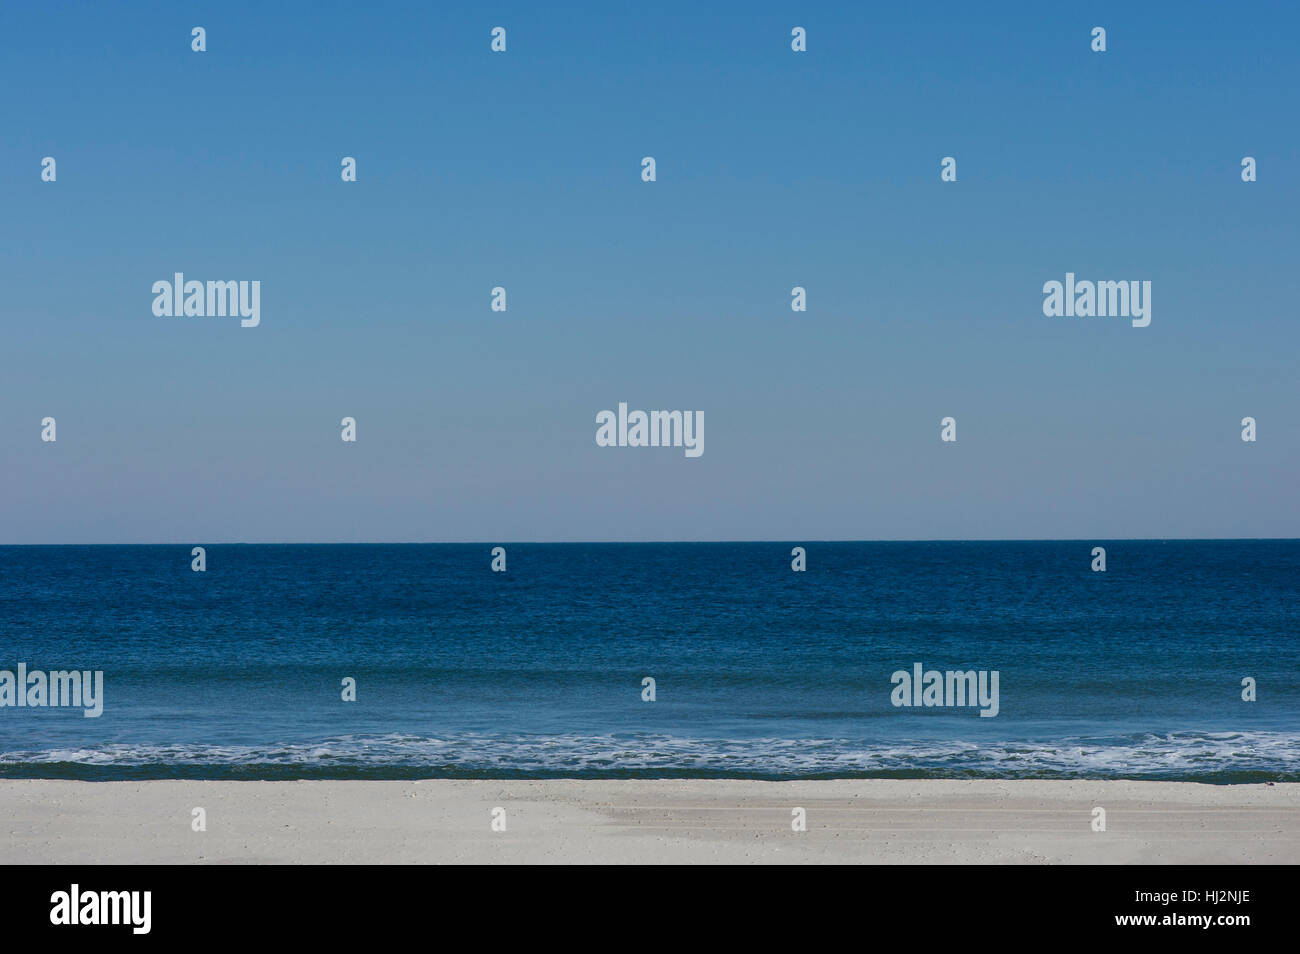 Une vue sur la plage avec un ciel bleu clair au-dessus de l'océan Atlantique. Banque D'Images